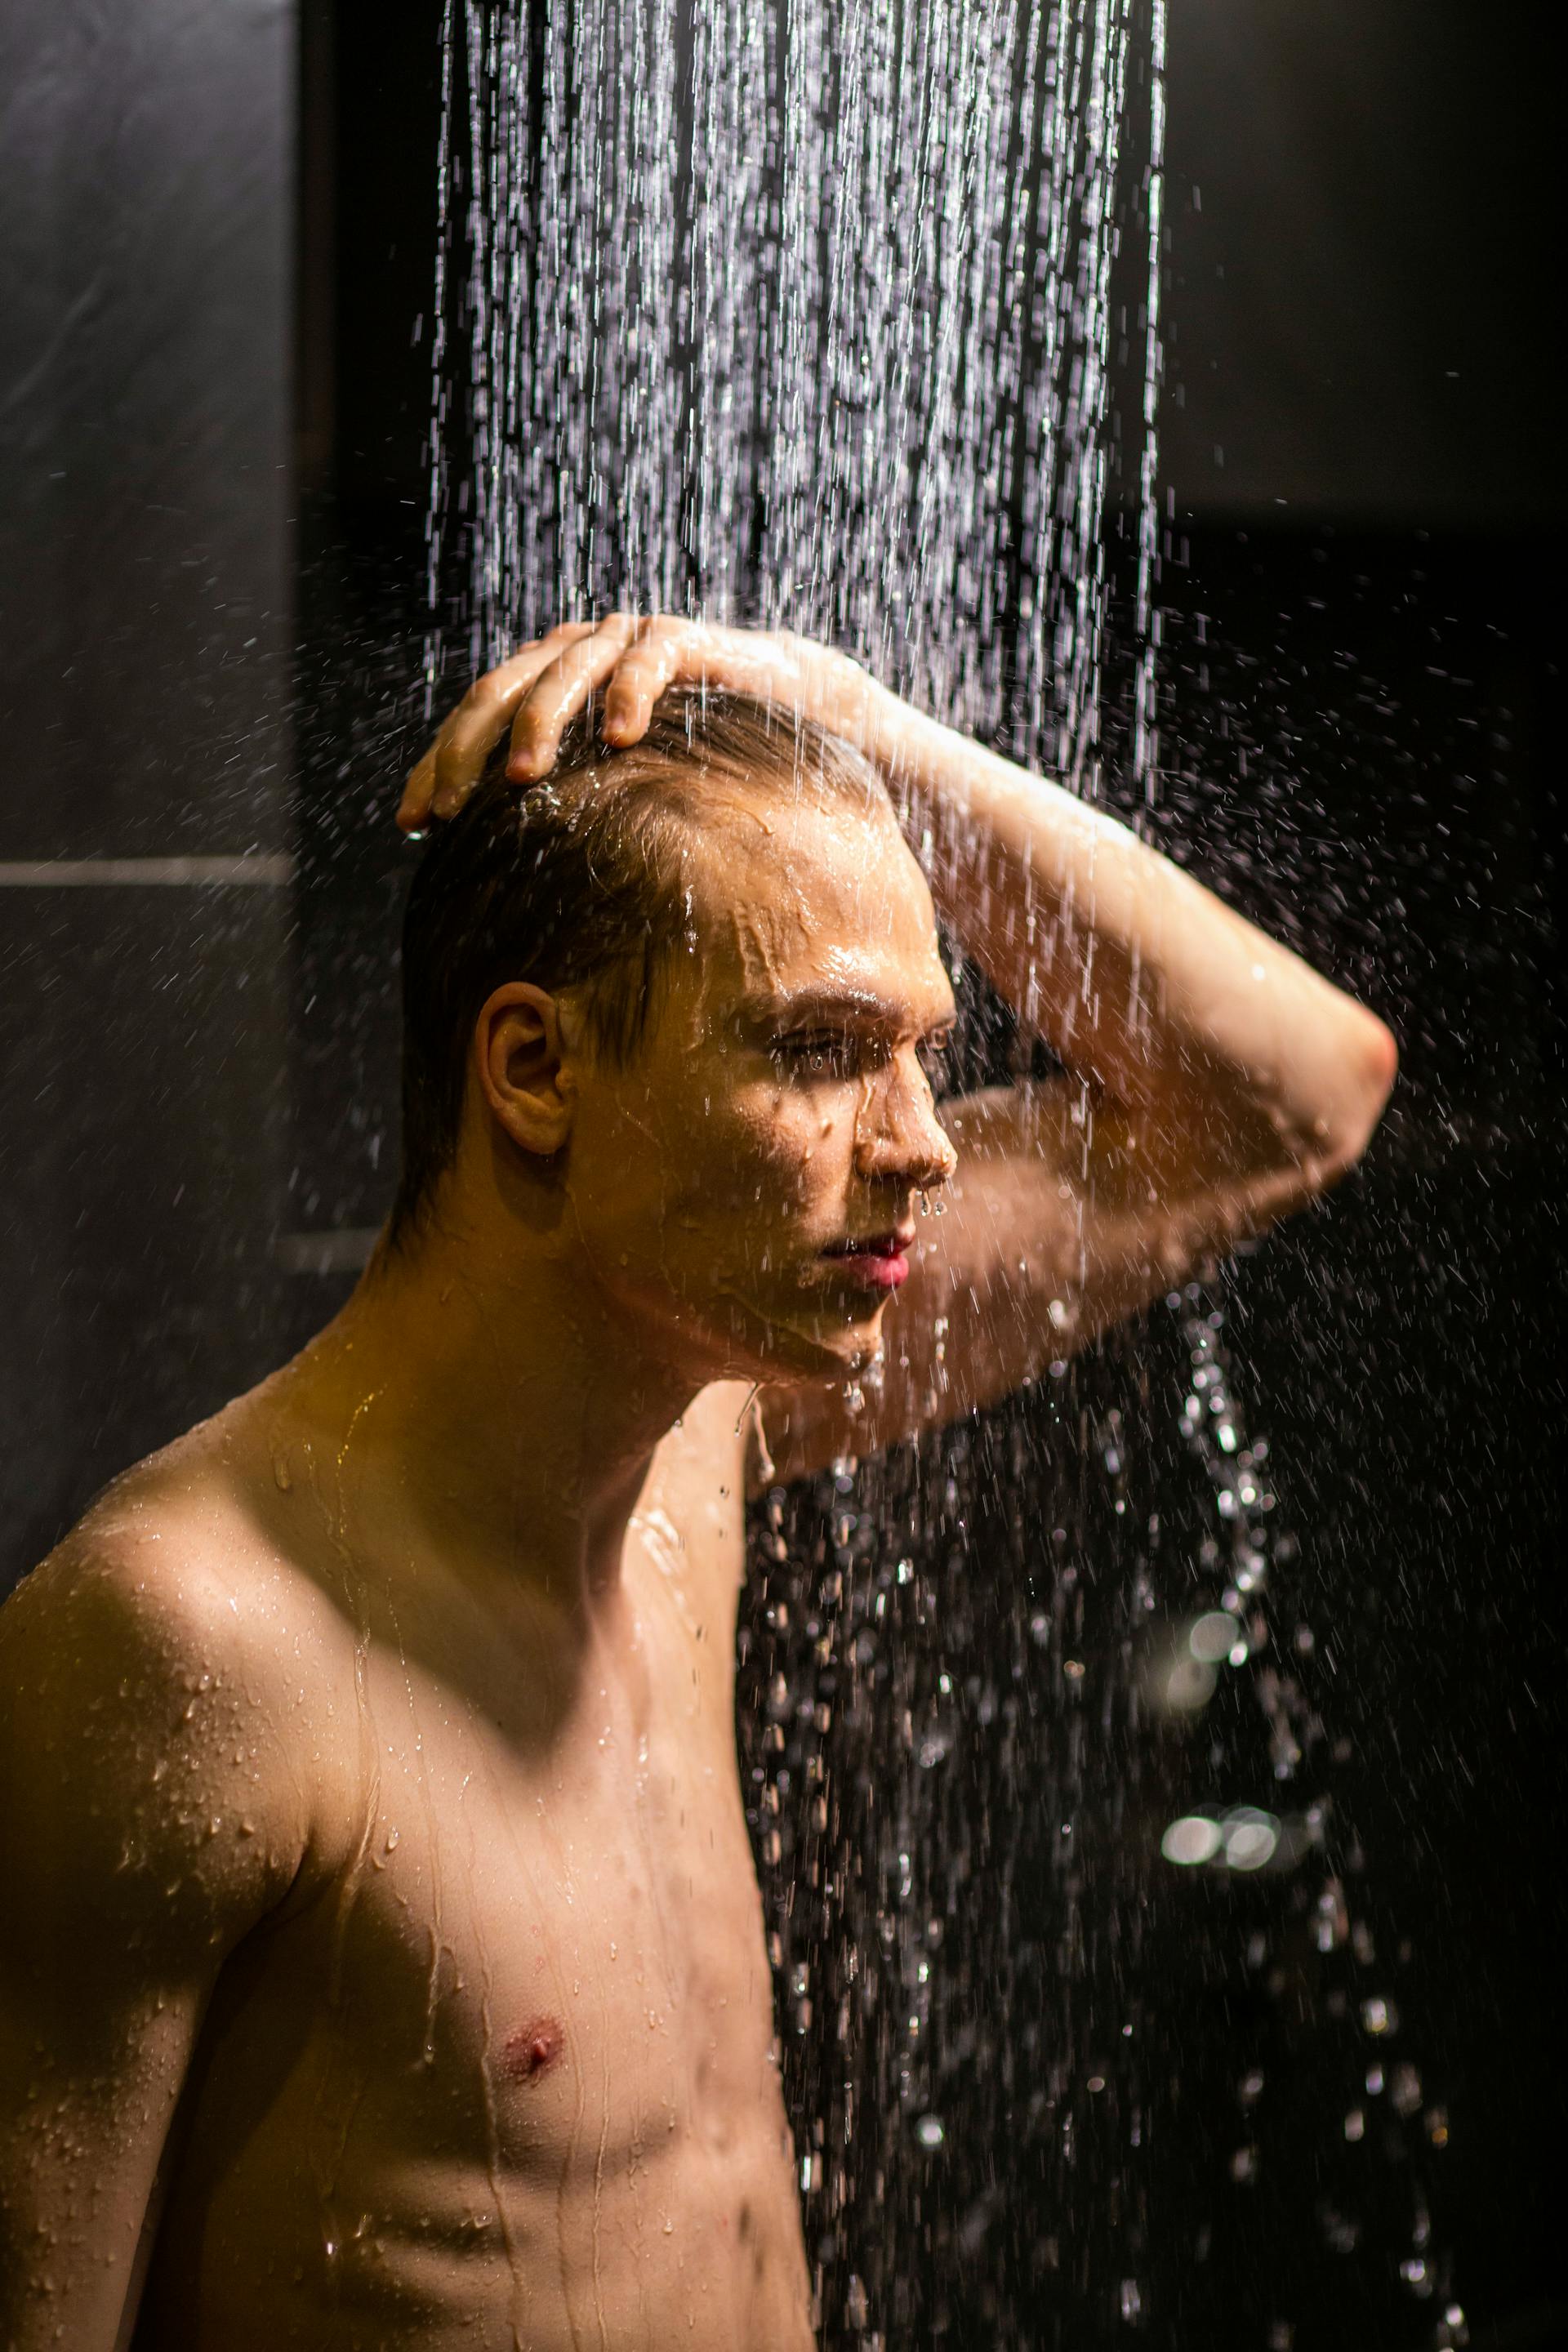 Un homme prenant une douche | Source : Pexels